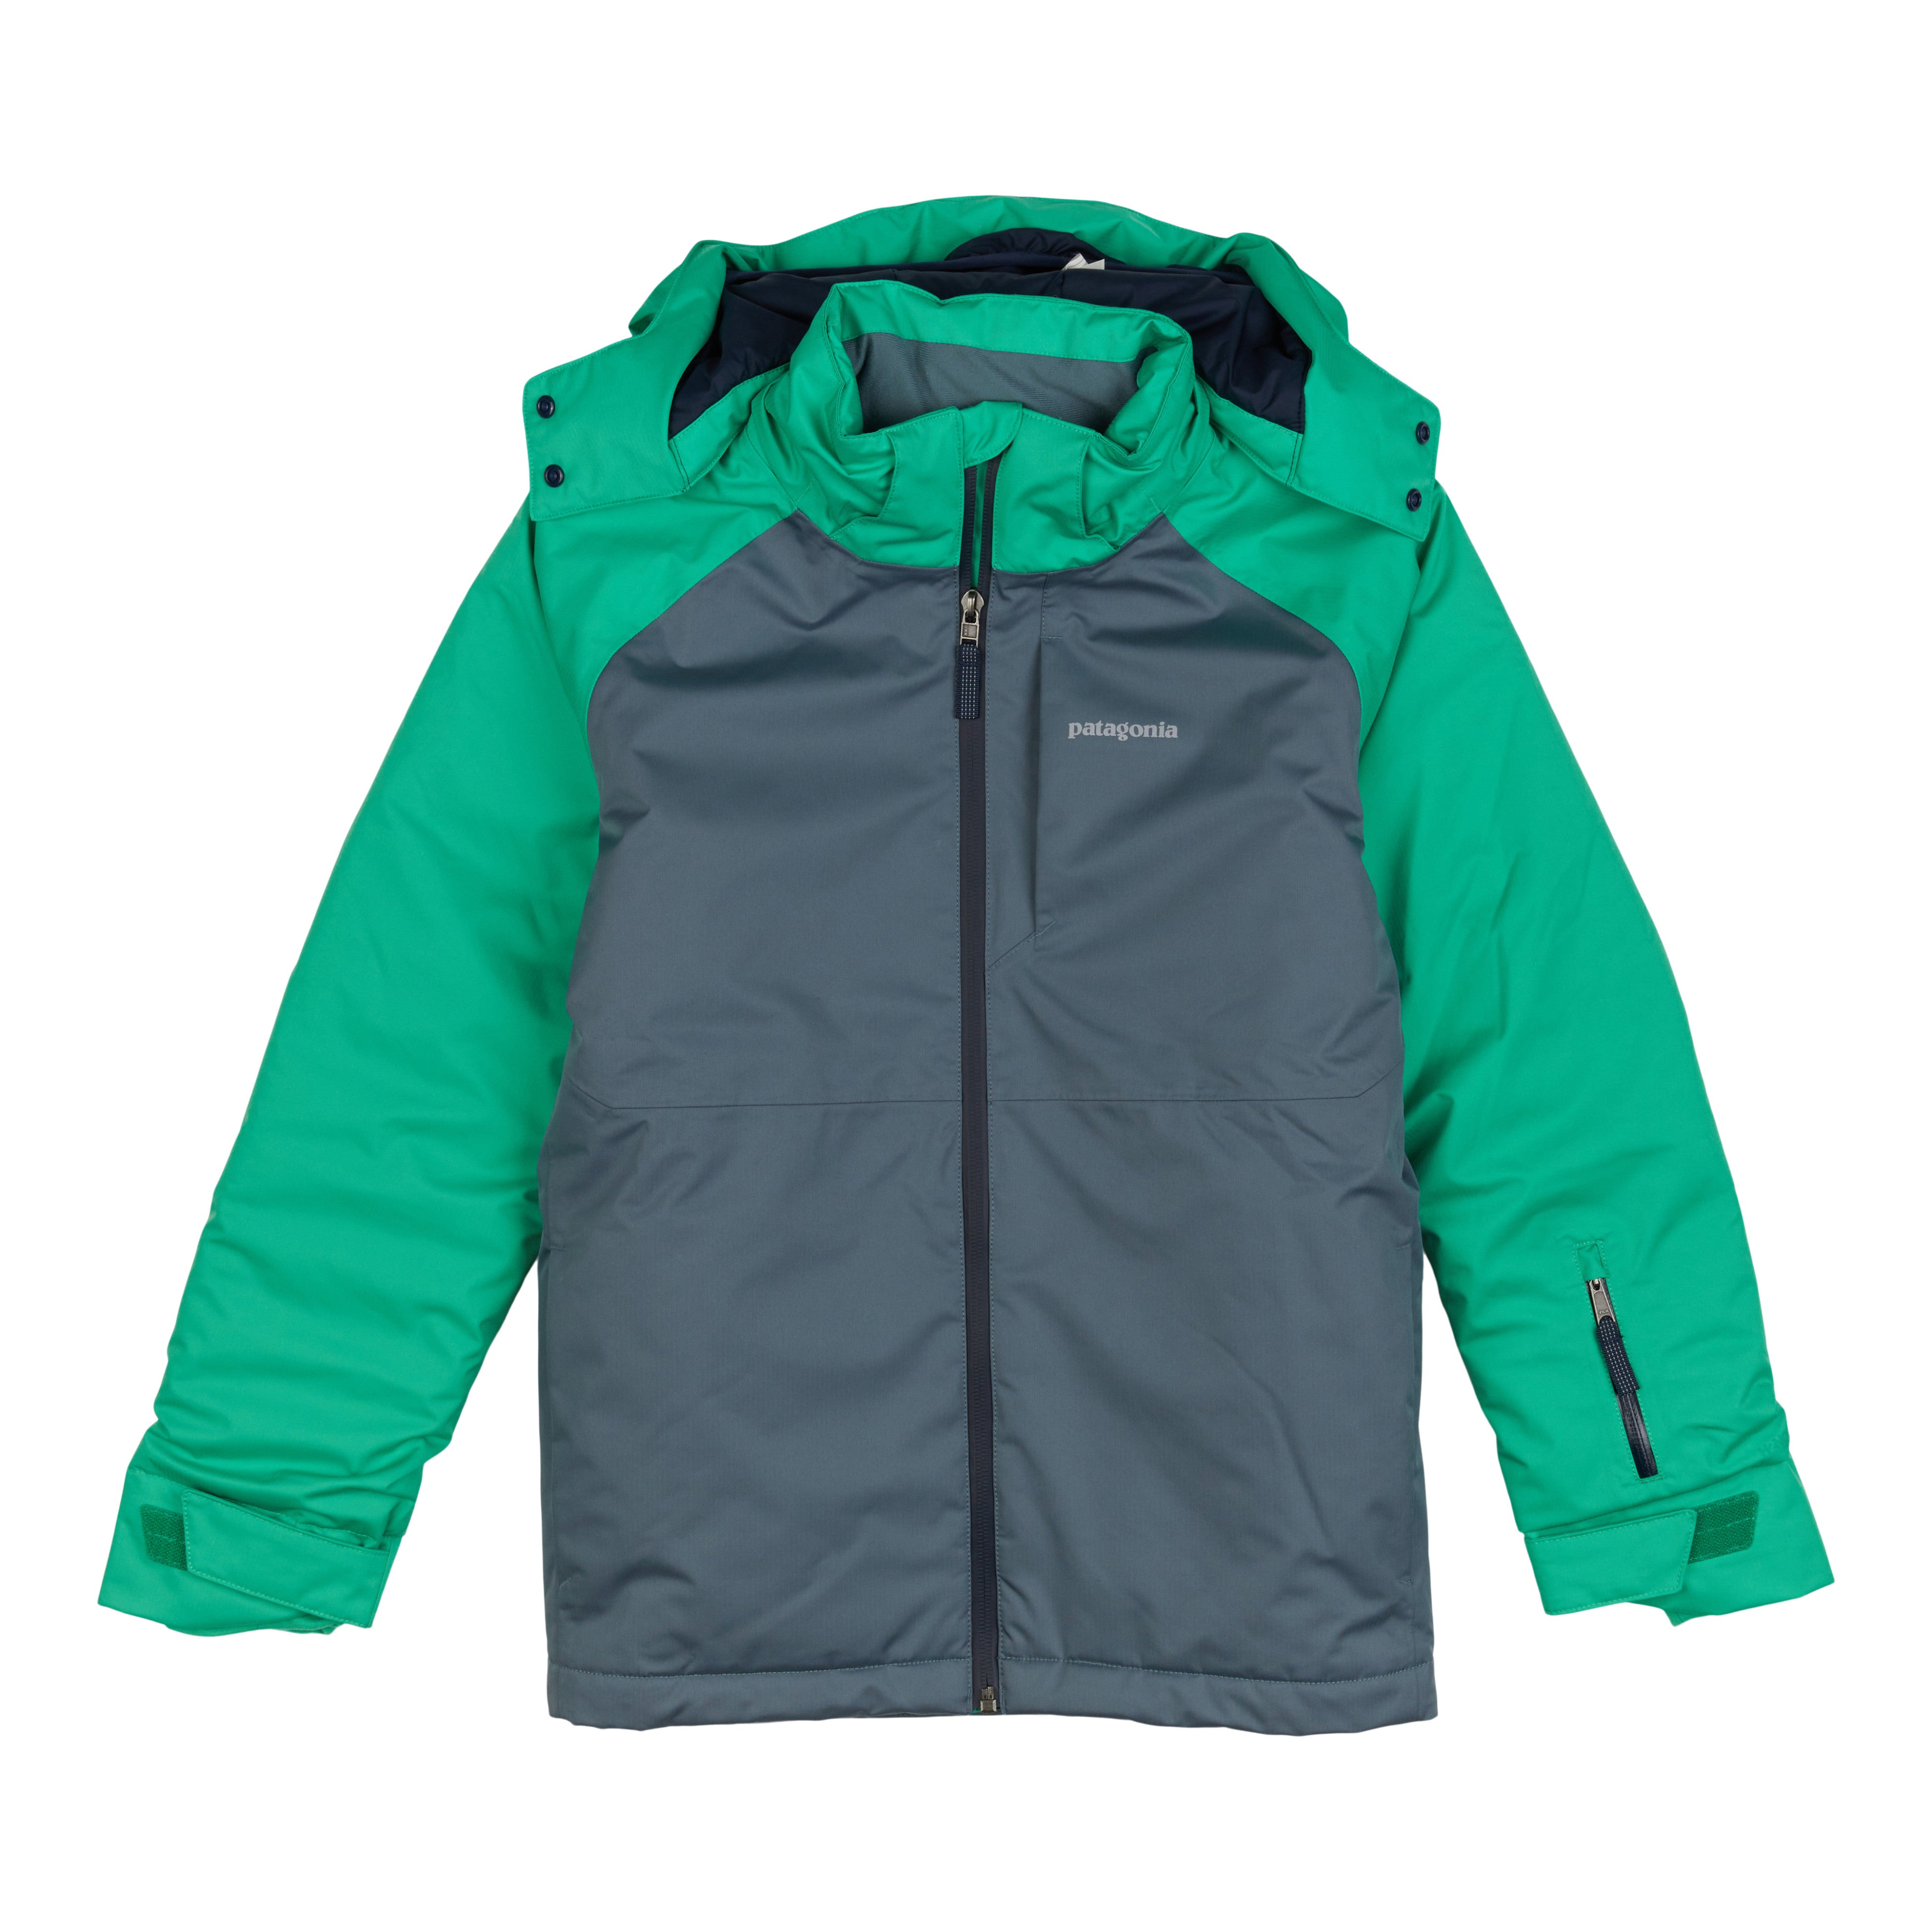 Boys' Snowshot Jacket – Patagonia Worn Wear